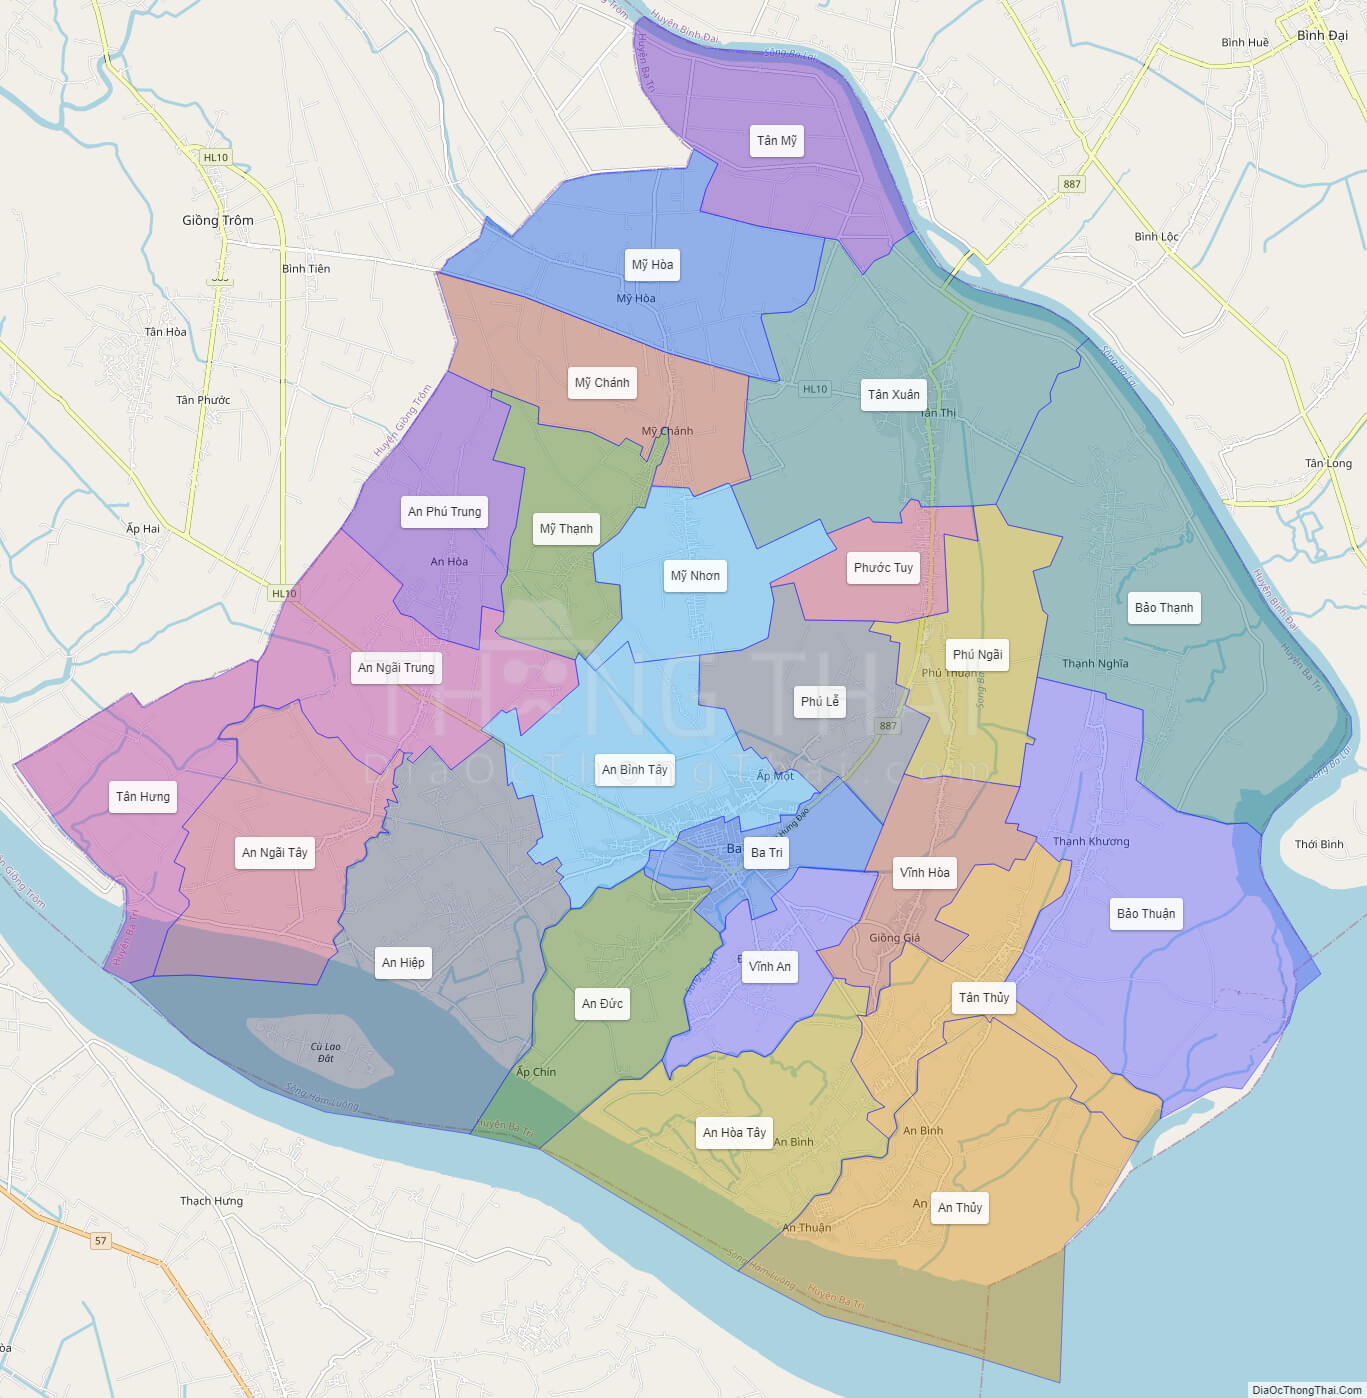 Chi tiết bản đồ hành chính huyện ba tri tỉnh bến tre đầy đủ nhất